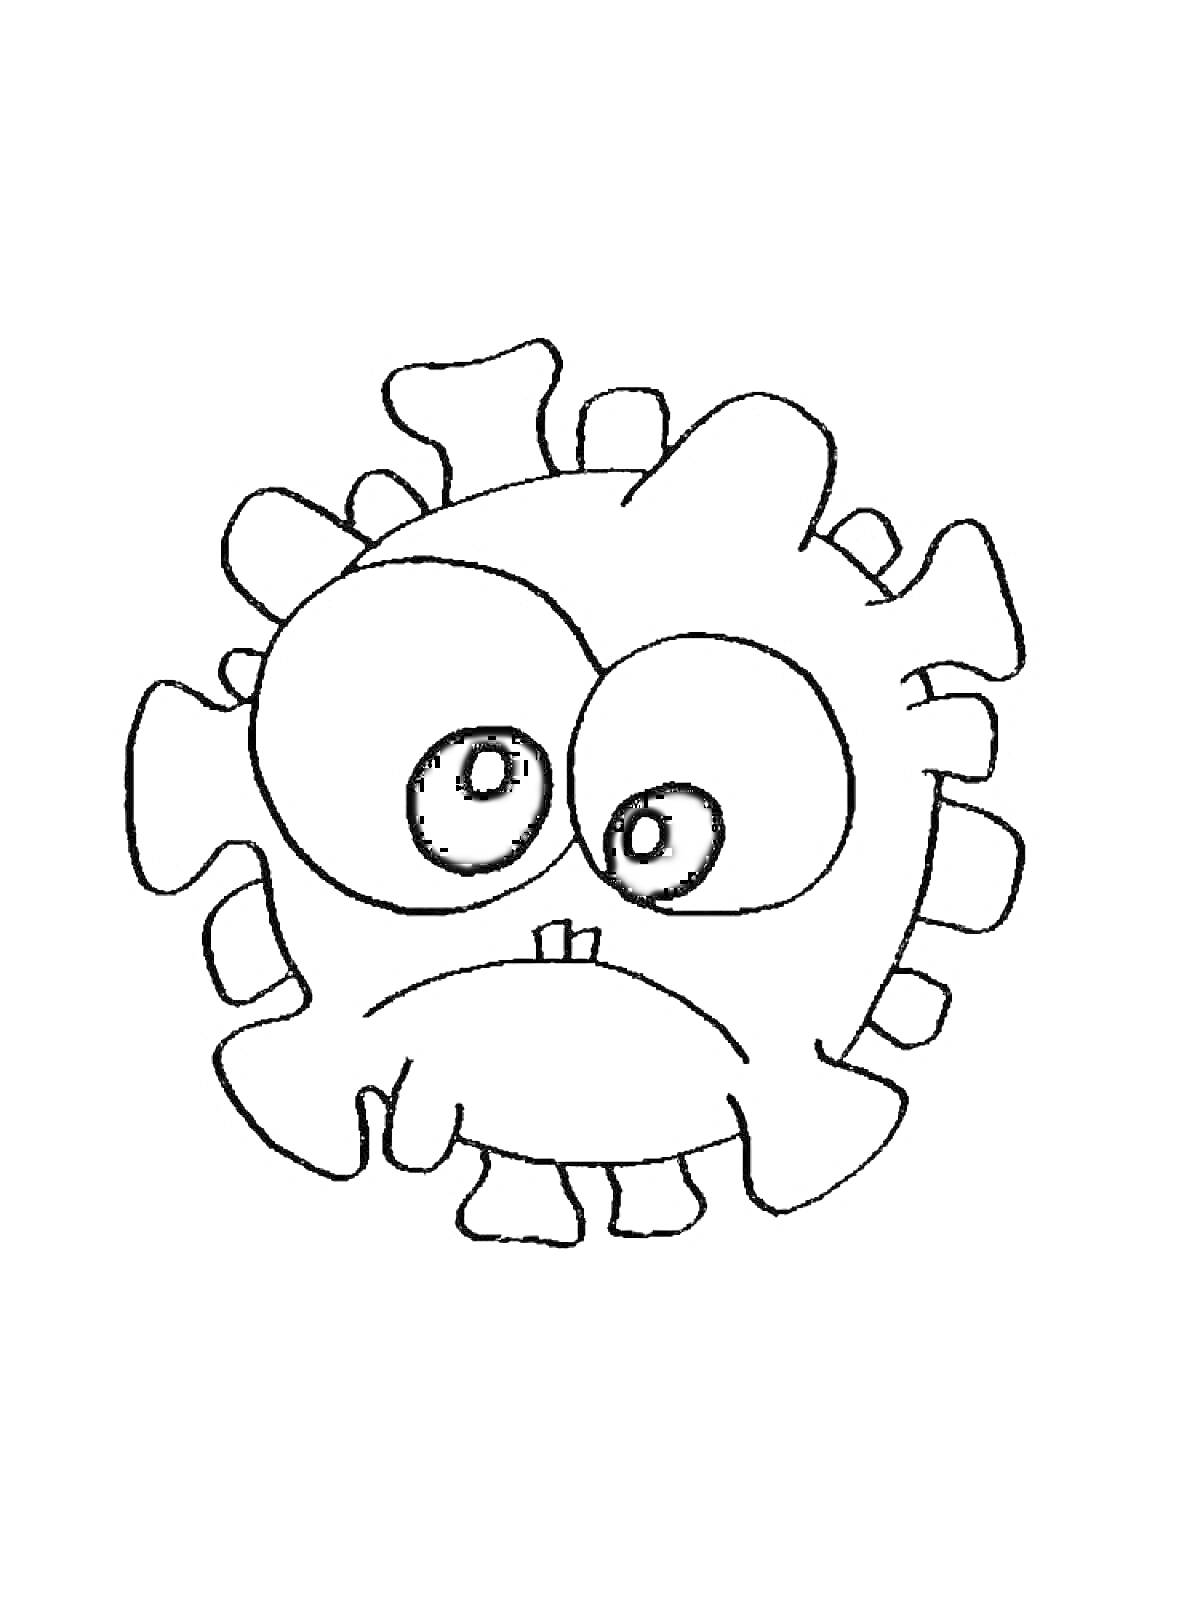 Забавный коронавирус с большими глазами и грустным выражением лица